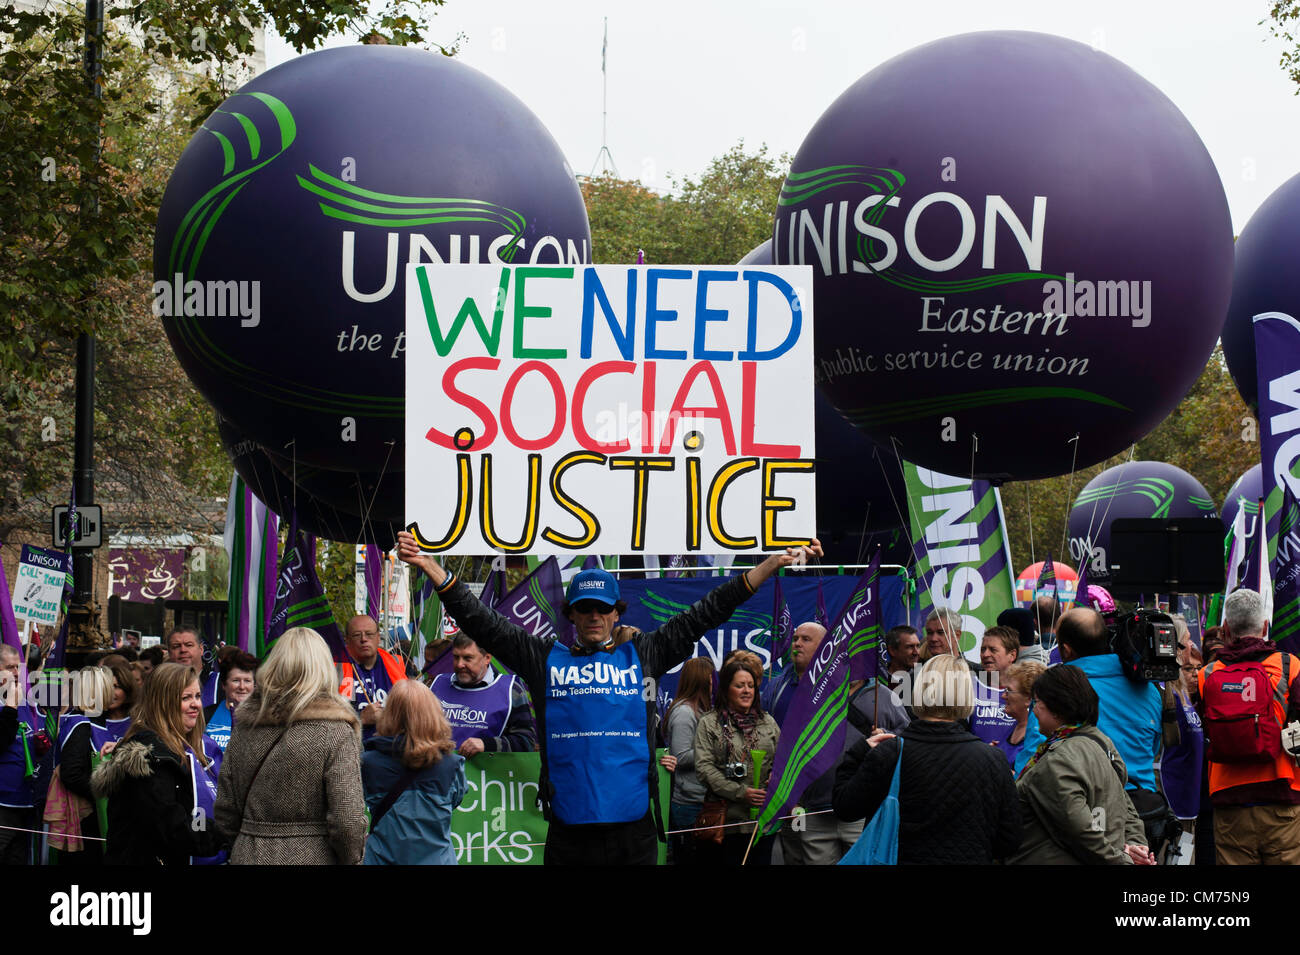 London, UK - 20. Oktober 2012: ein Mann hält ein Banner gegen den Sparkurs lesen "Eine Zukunft, die funktioniert" März "Wir brauchen sozialen Gerechtigkeit" während der TUC organisiert schneidet im Zentrum von London. Stockfoto